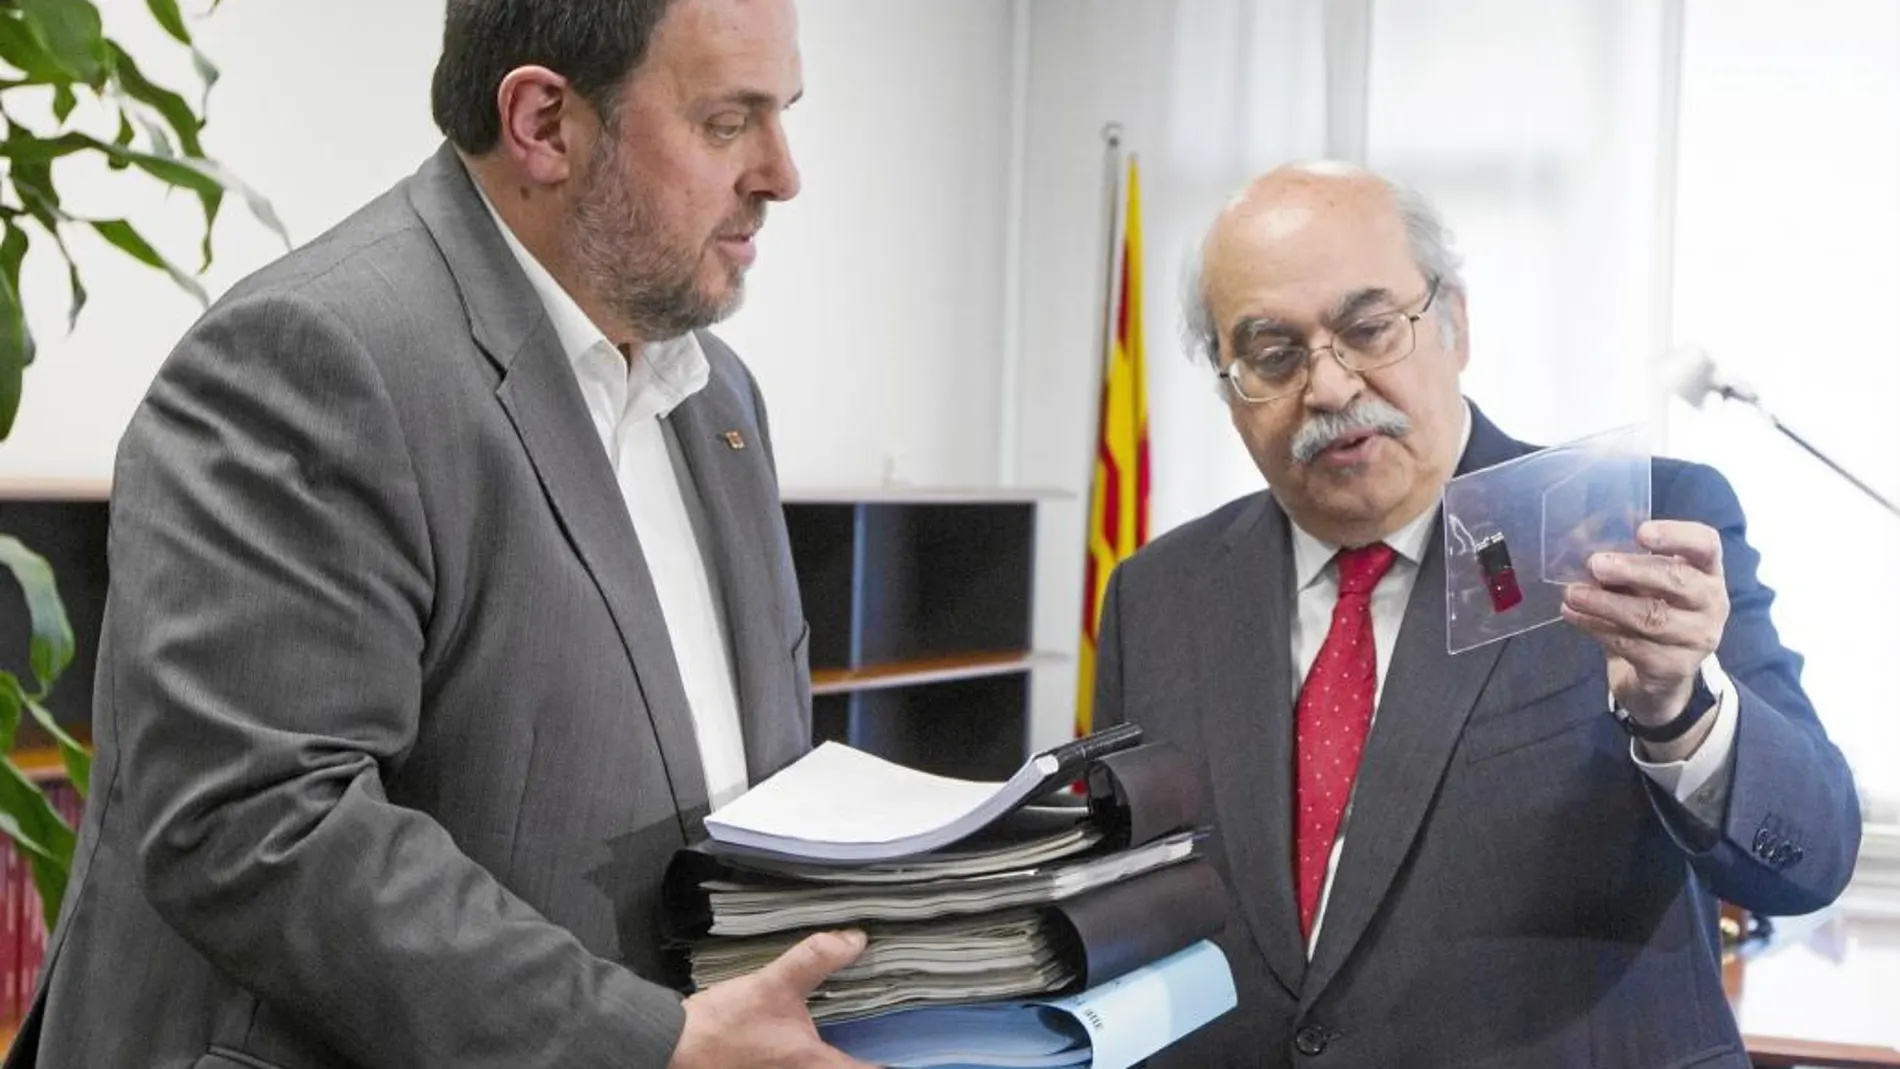 El nuevo conseller de Economía y vicepresidente de la Generalitat, Oriol Junqueras, recibe de su antecesor en el cargo, Andreu Mas-Colell documentación del departamento